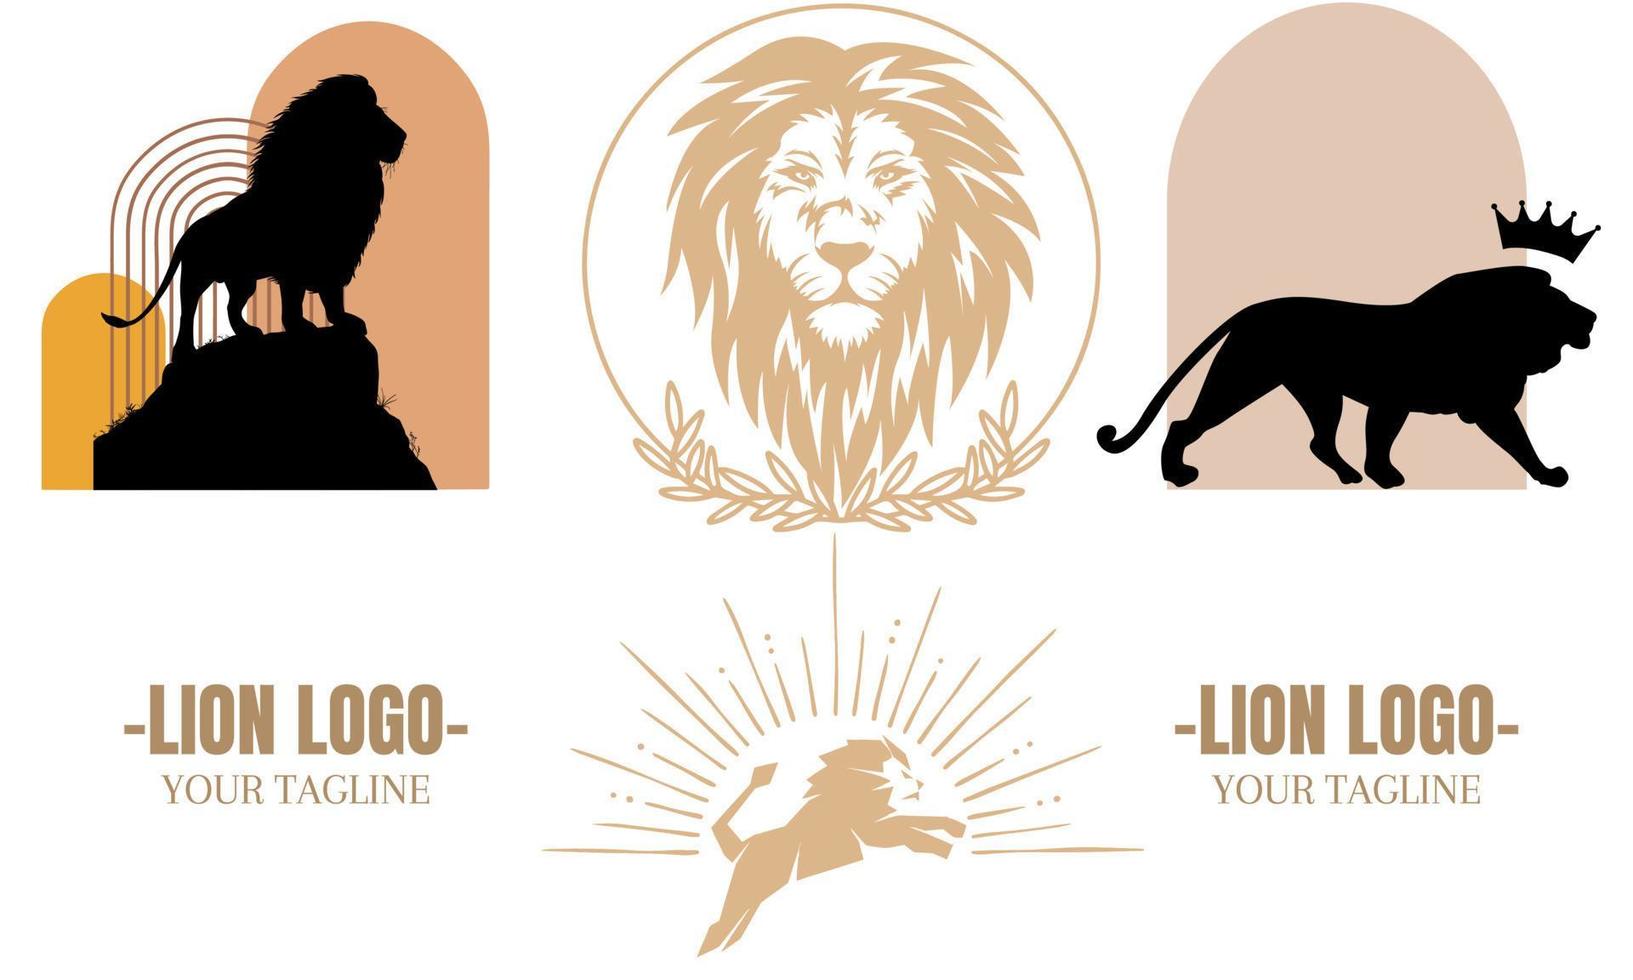 Lion logo bundles design illustration. Brand identity emblem vector